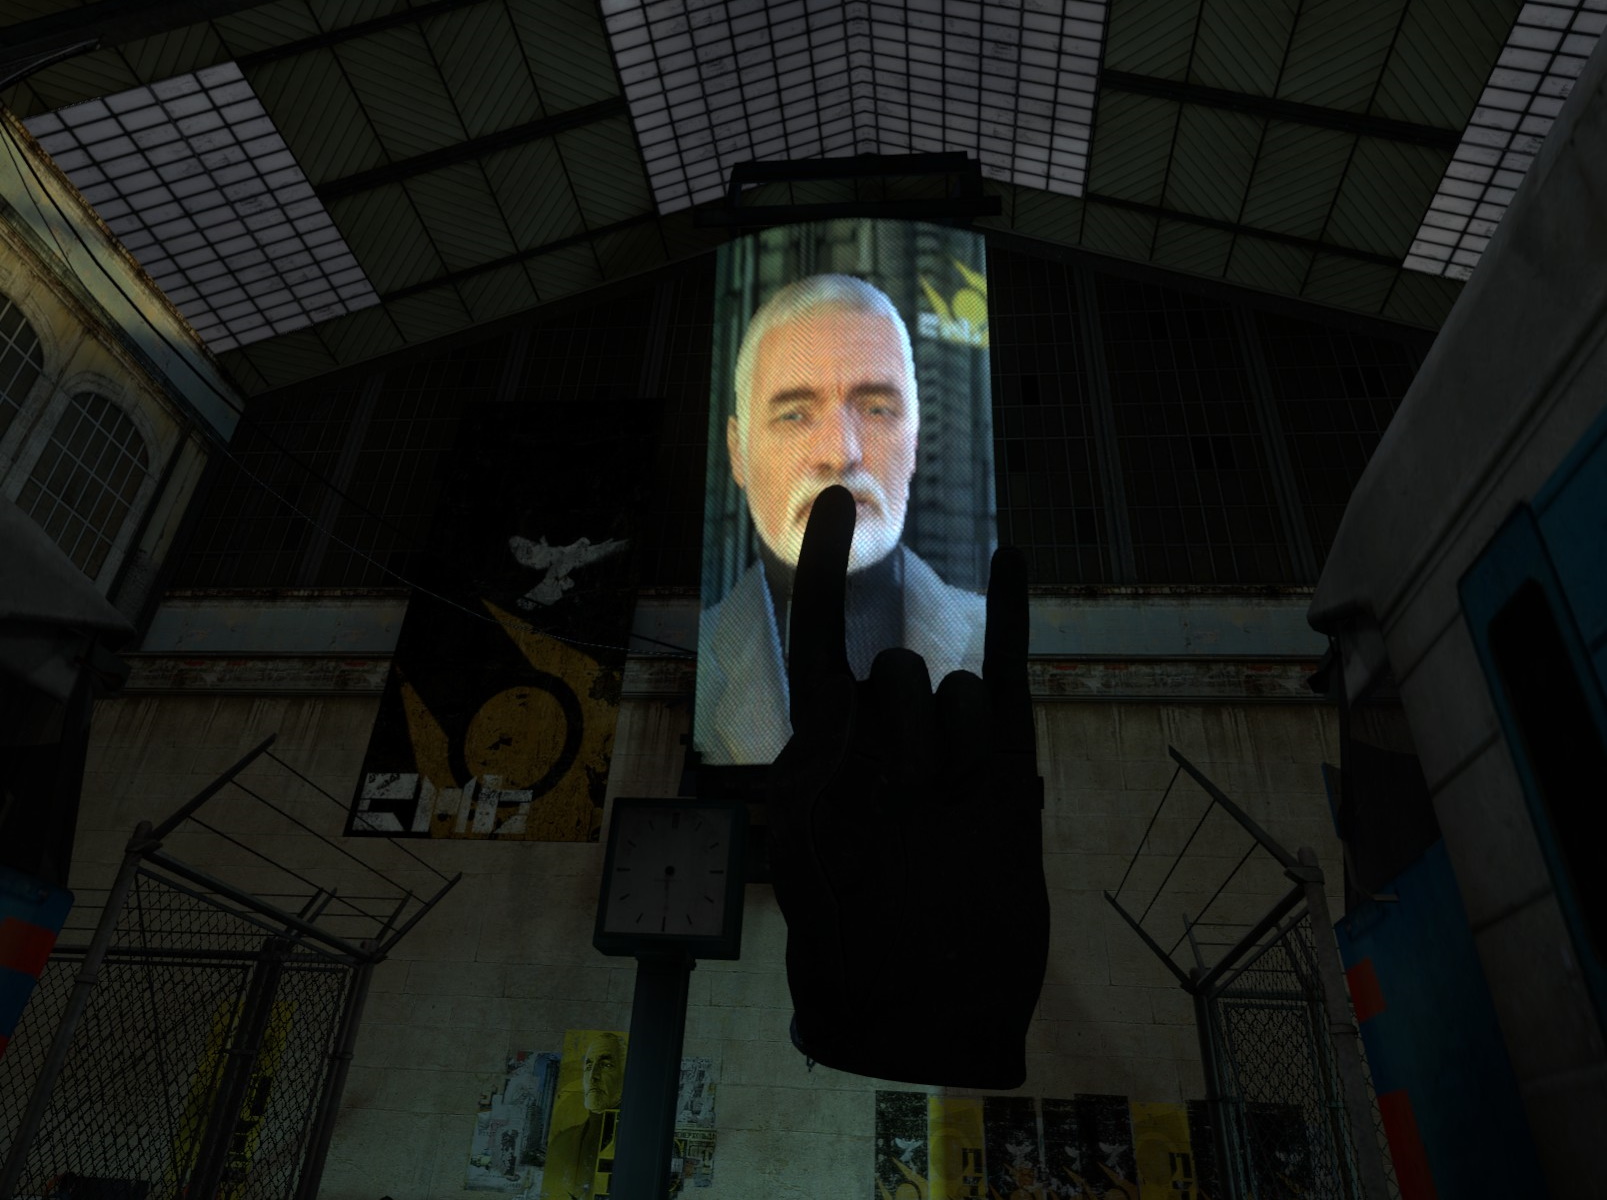 Lade være med Ny mening Harden Half-Life 2: VR Mod